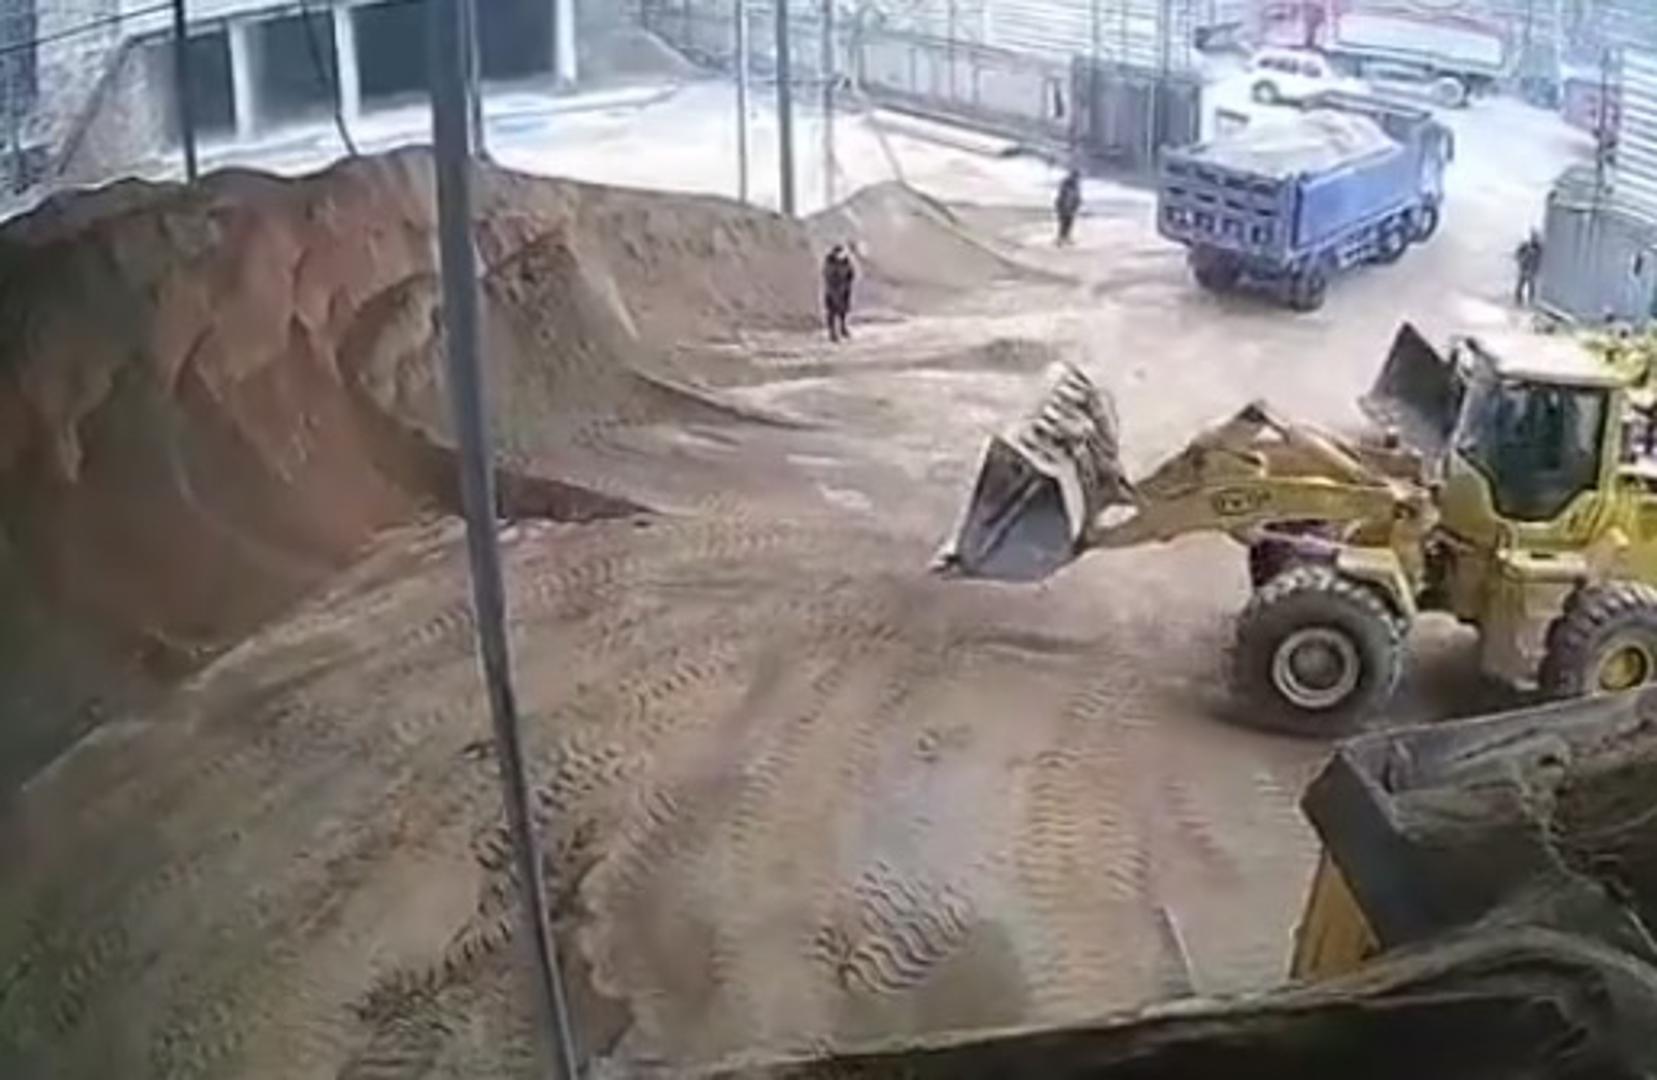 Nevjerojatna scena snimljena je u jednom skladištu pijeska u Kini gdje je bagerist zamalo ubio upraviteljicu koja se šetala gradilištem dok je on utovarivao pijesak u kamione.